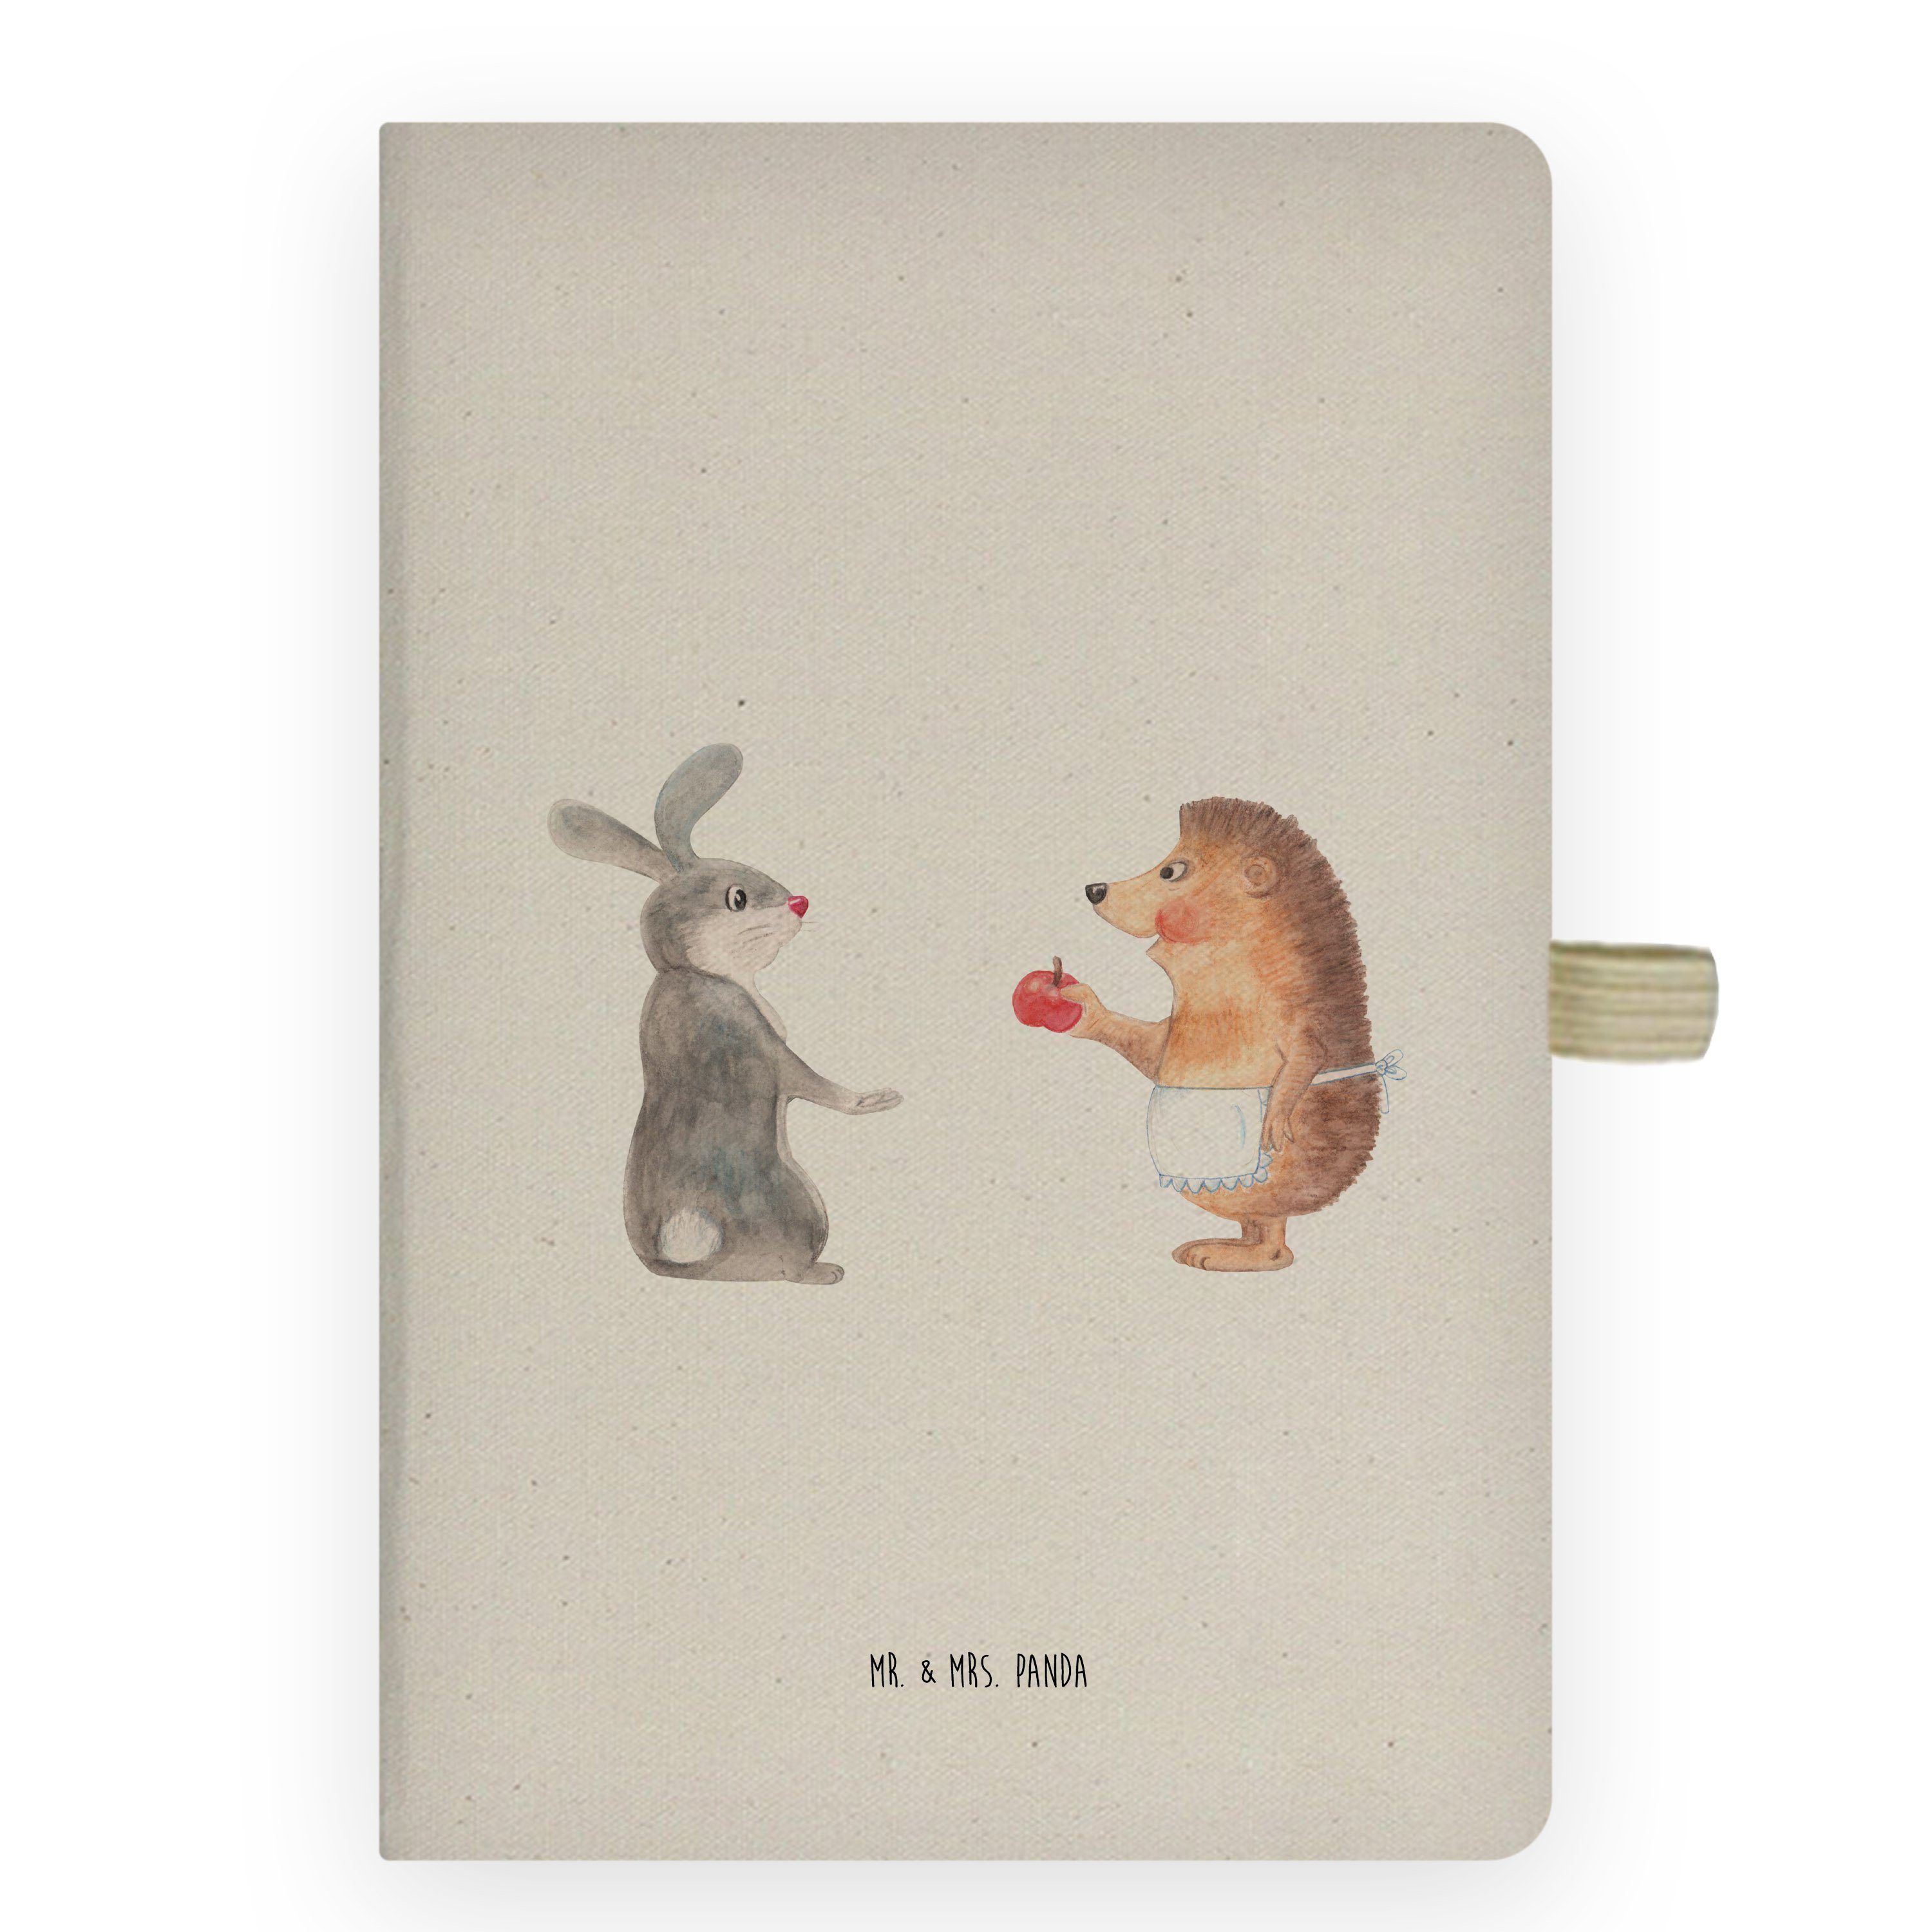 Mr. & Mrs. Panda Notizbuch Liebe ist nie ohne Schmerz - Transparent - Geschenk, Journal, Igel un Mr. & Mrs. Panda